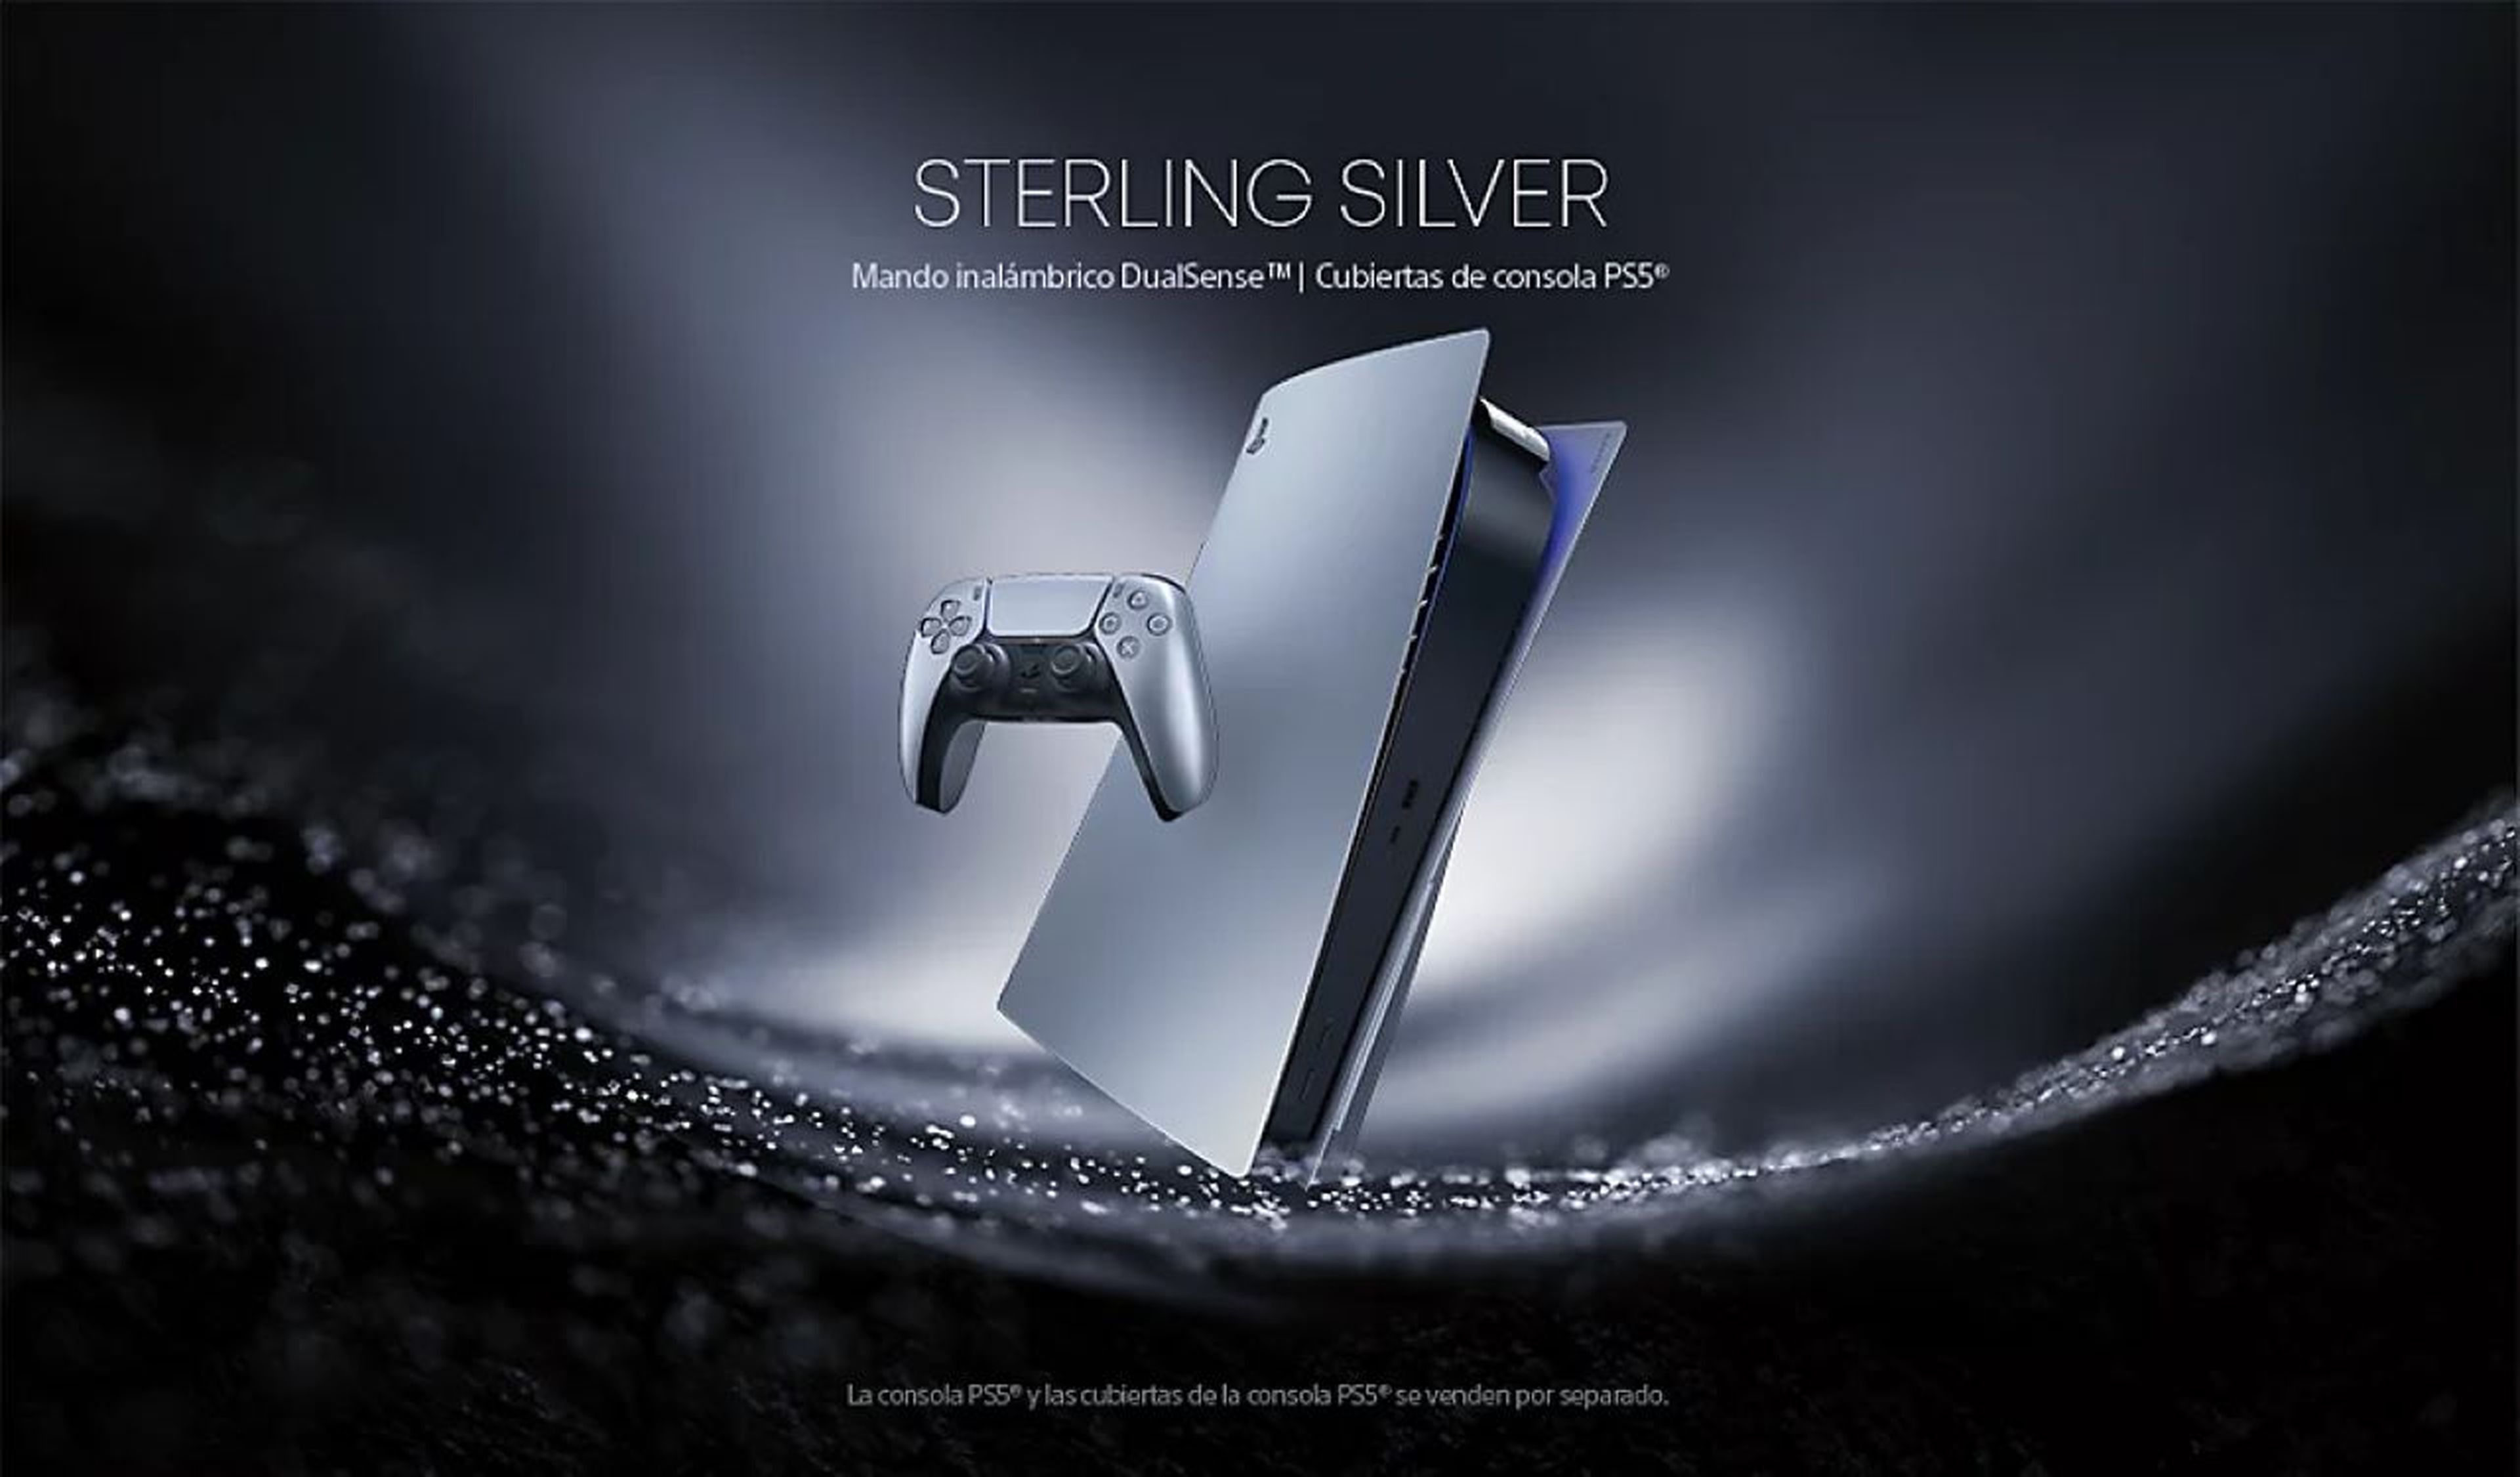 Mando inalámbrico DualSense Sony Sterling Silver PS5 - Mando consola - Los  mejores precios